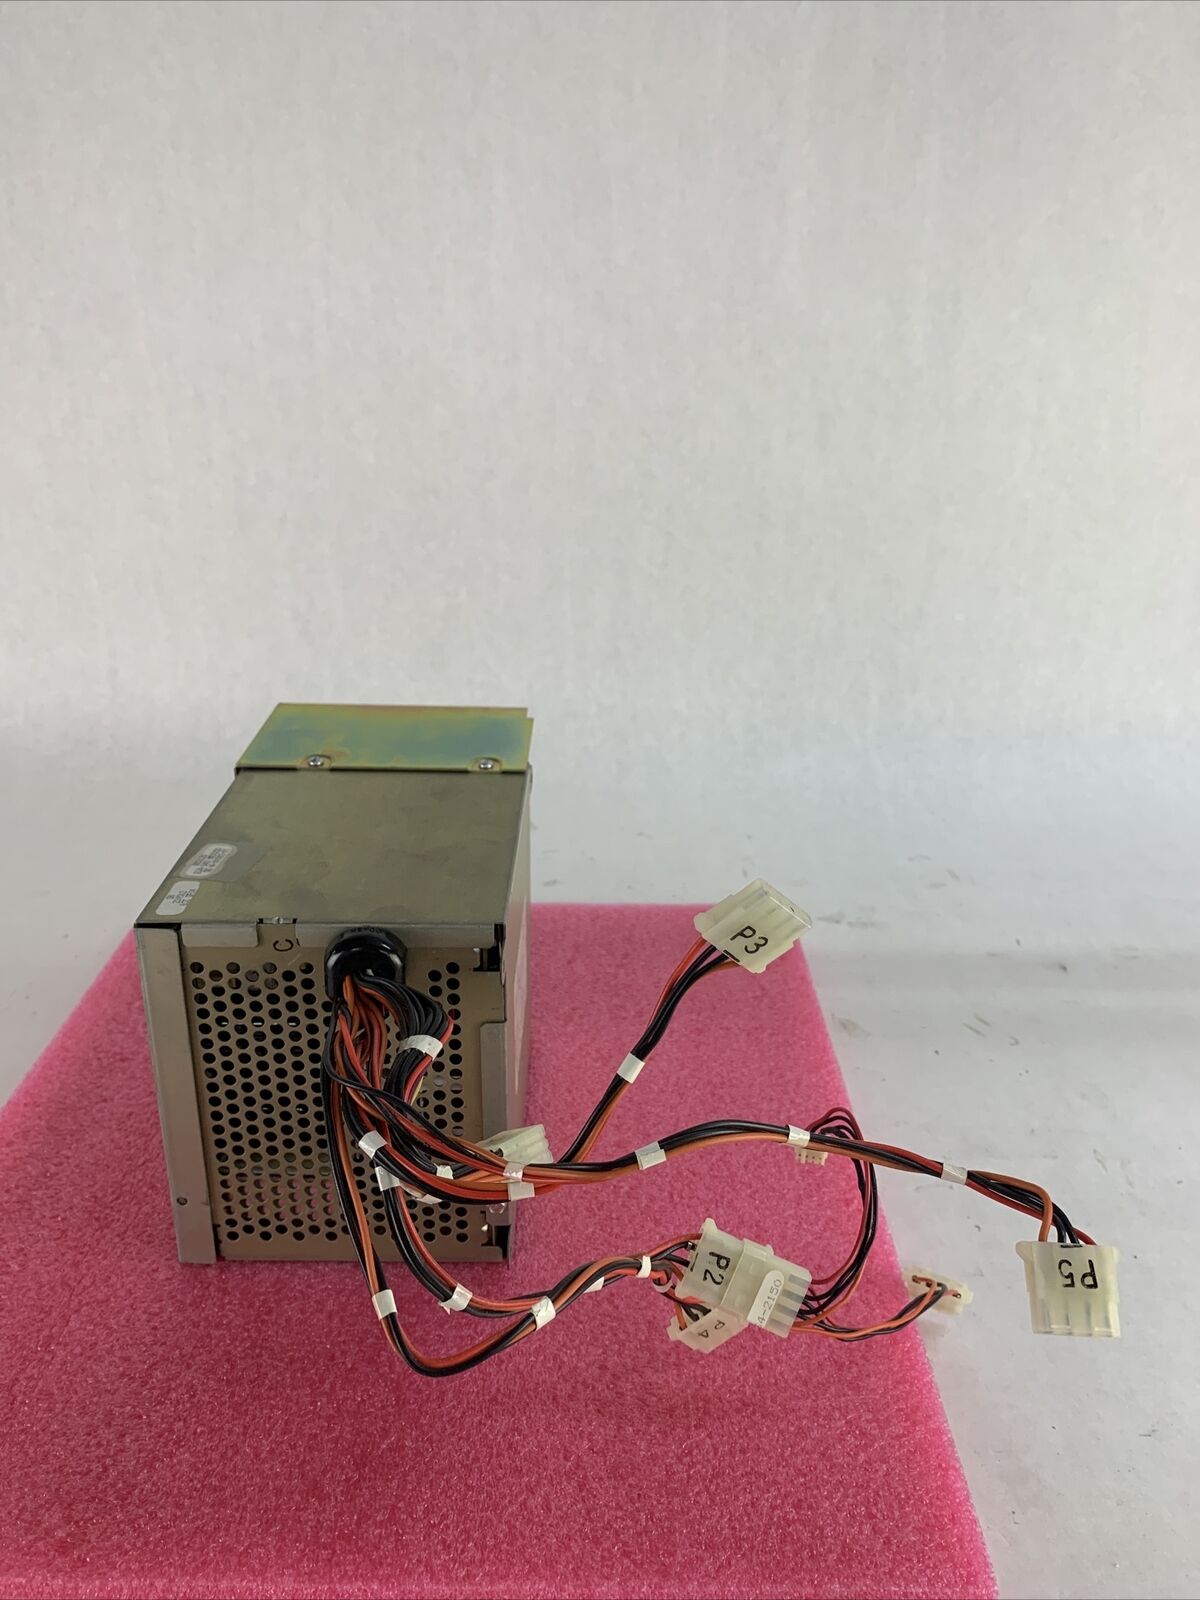 ZDS 234-890 115/230 V 4.0/2.0A 60/50Hz Power Module 1988